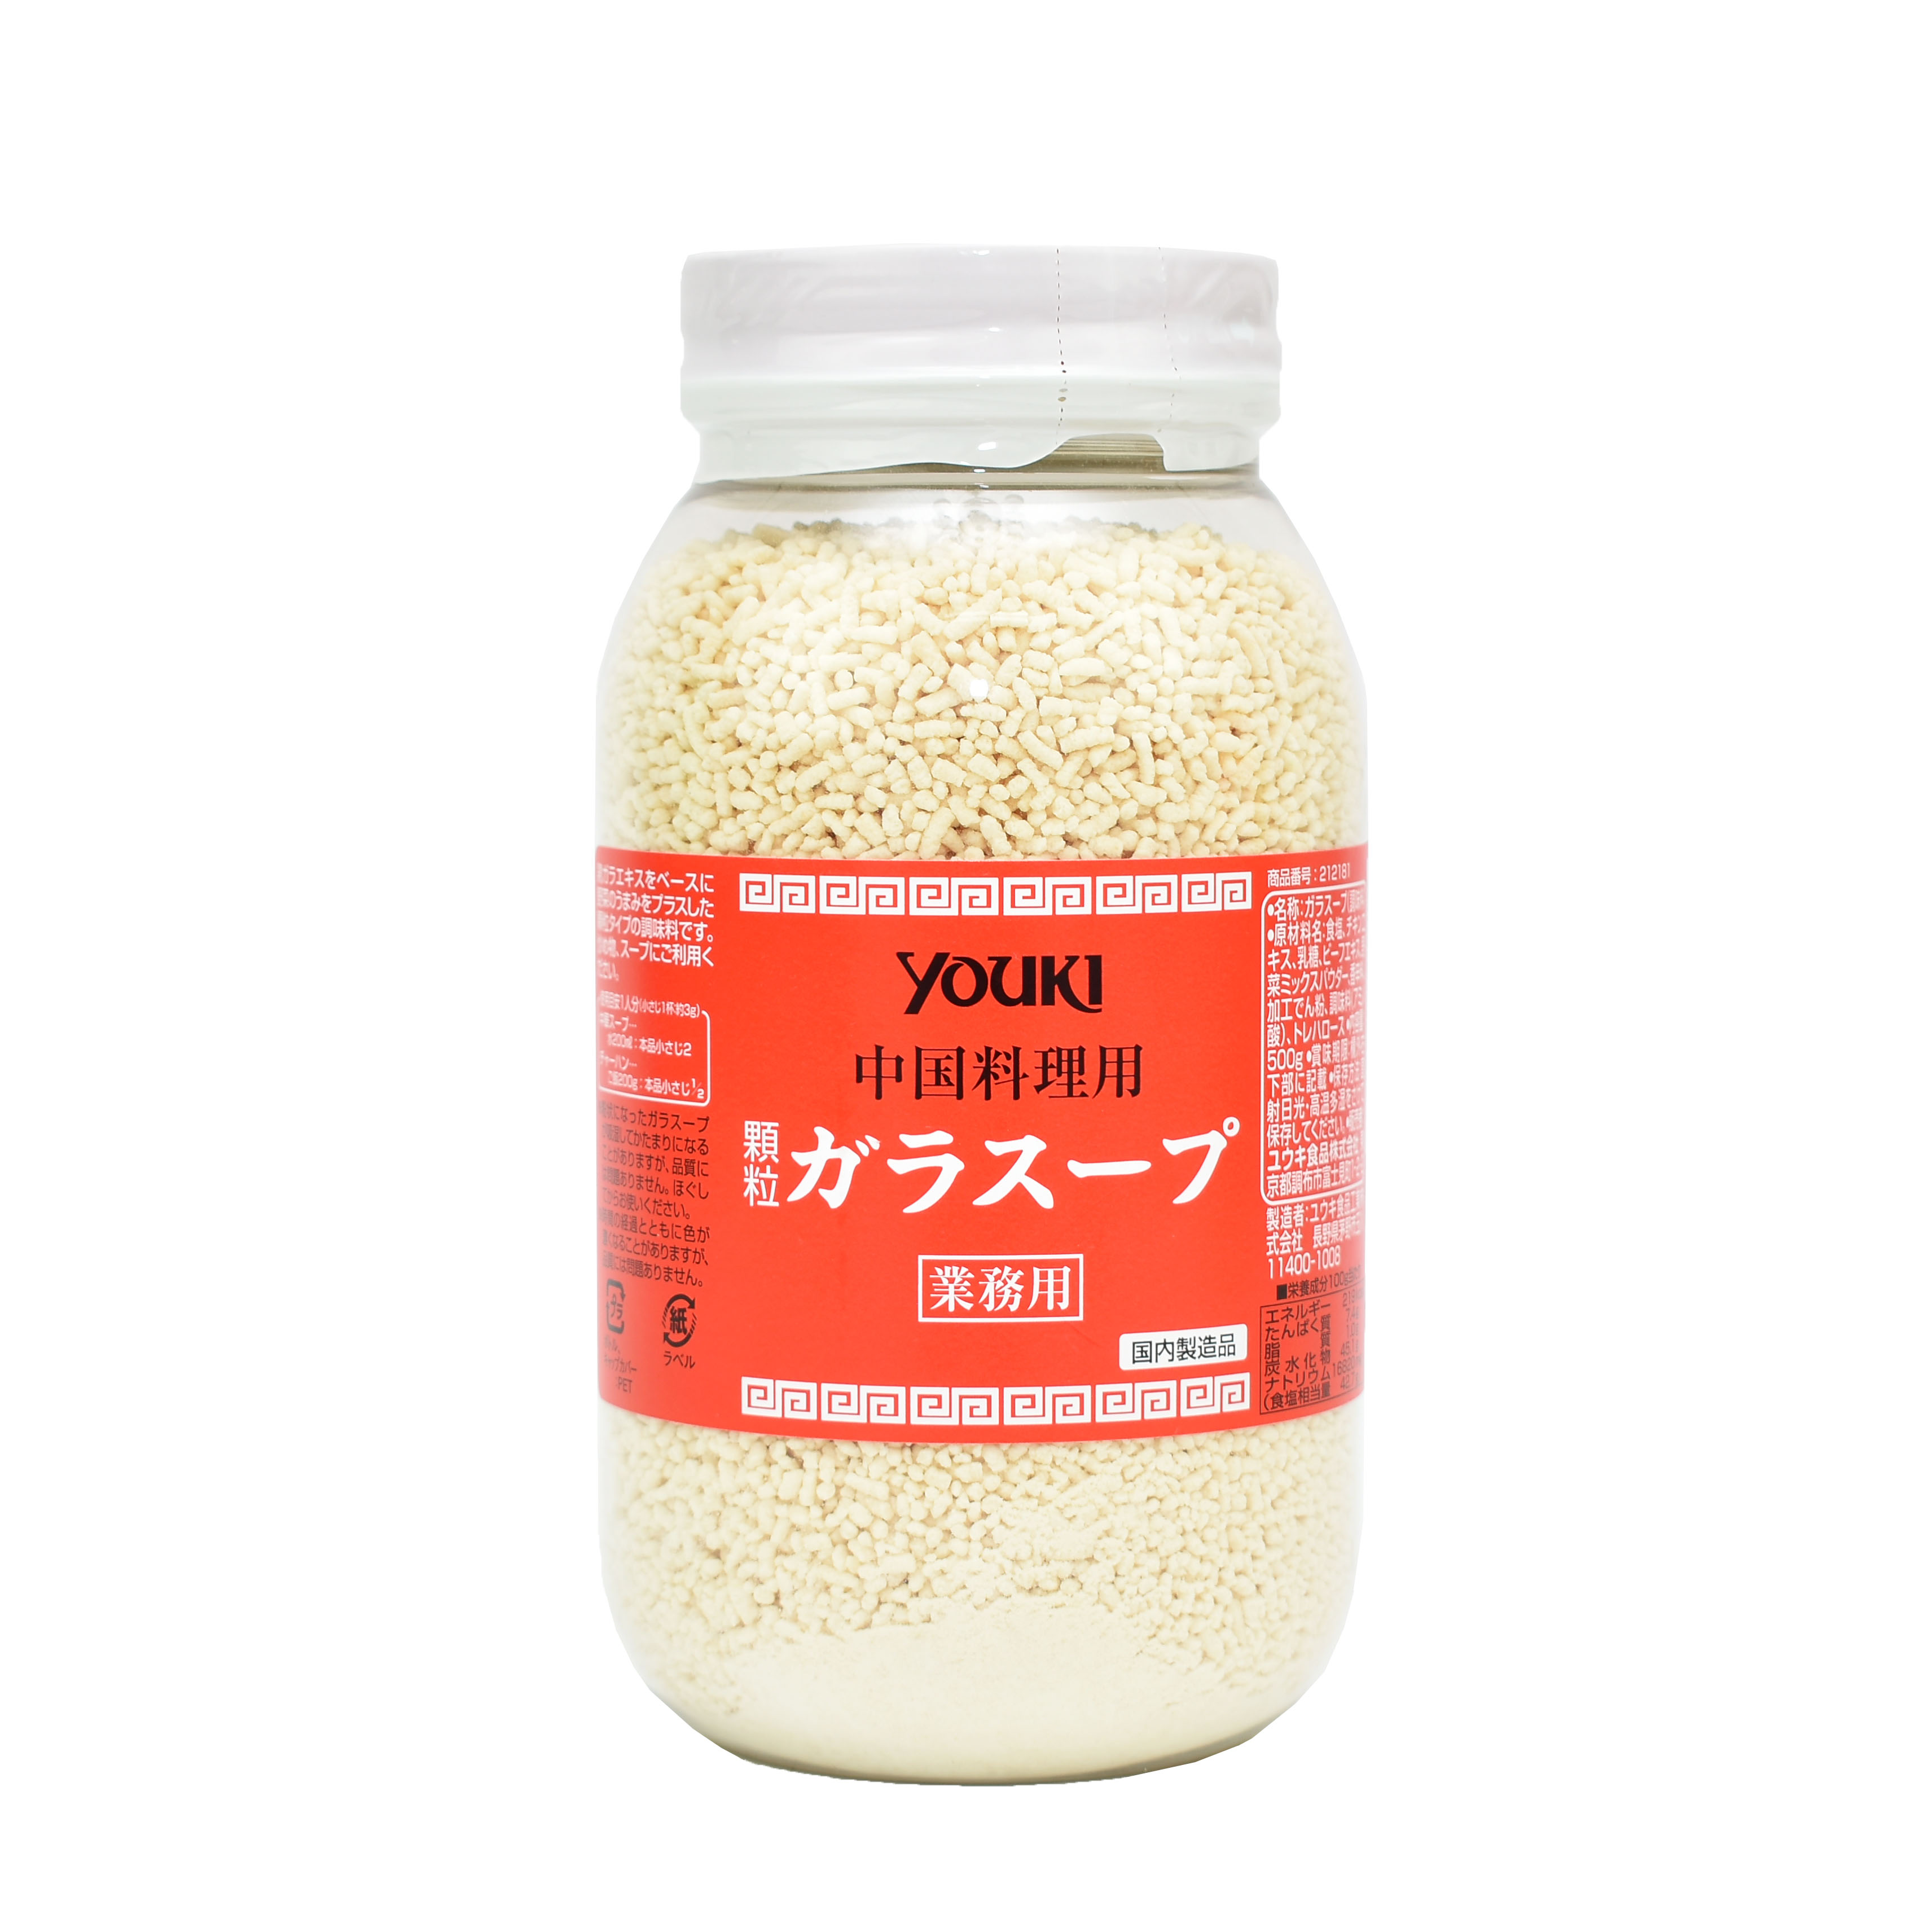 Hạt nêm Youki (500g) - Nhật Bản